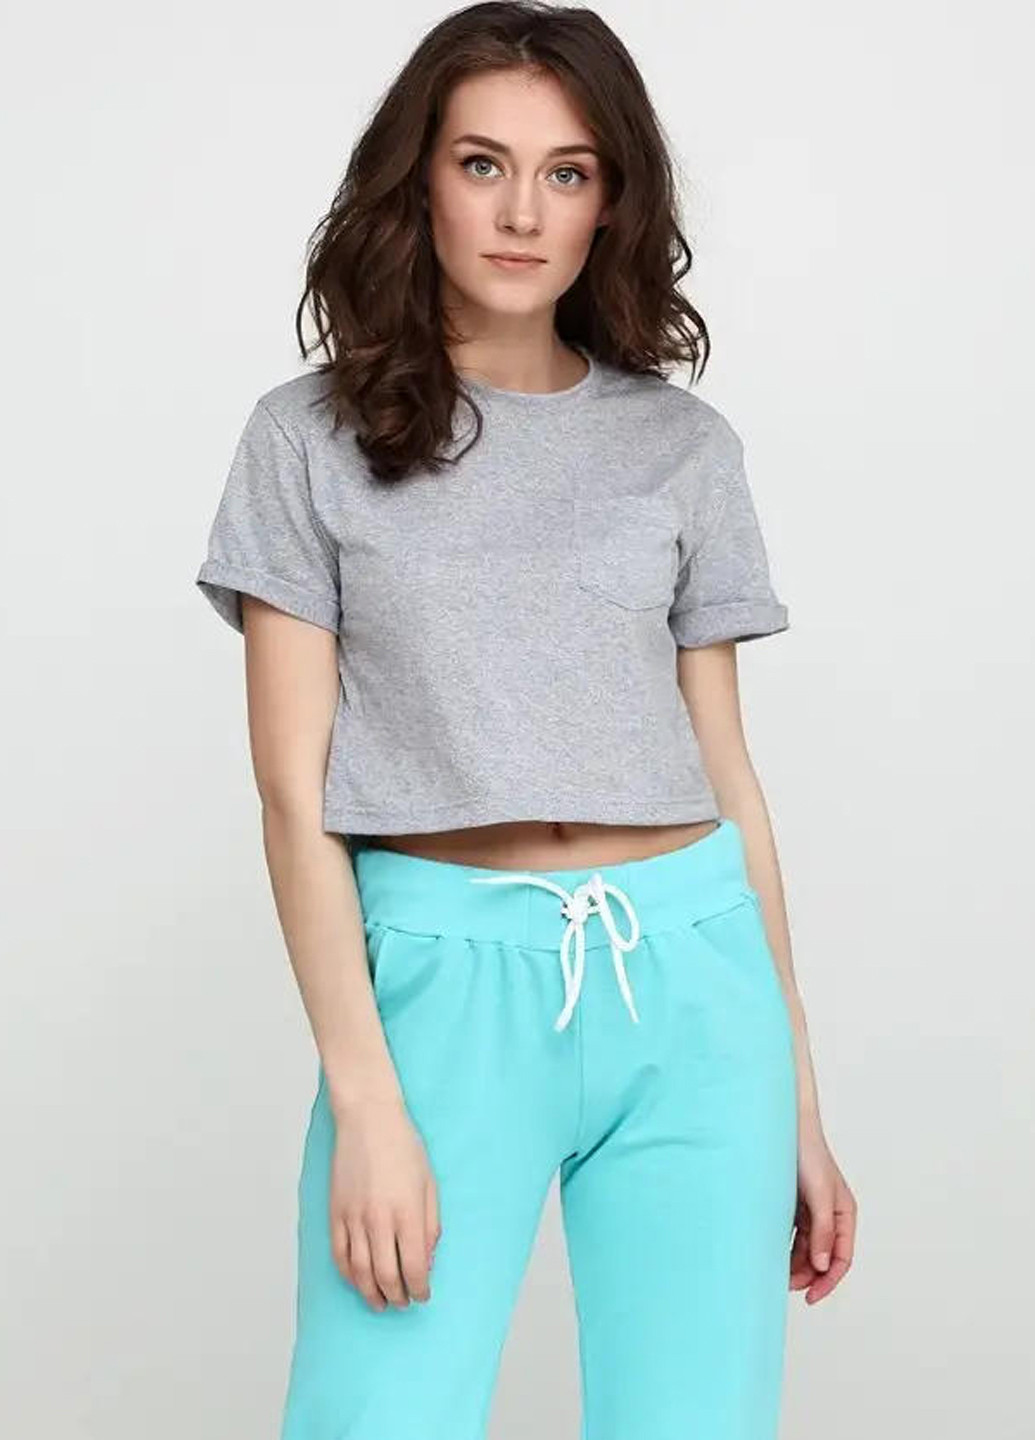 Светло-серая летняя женская укороченная футболка, топ Sport Line